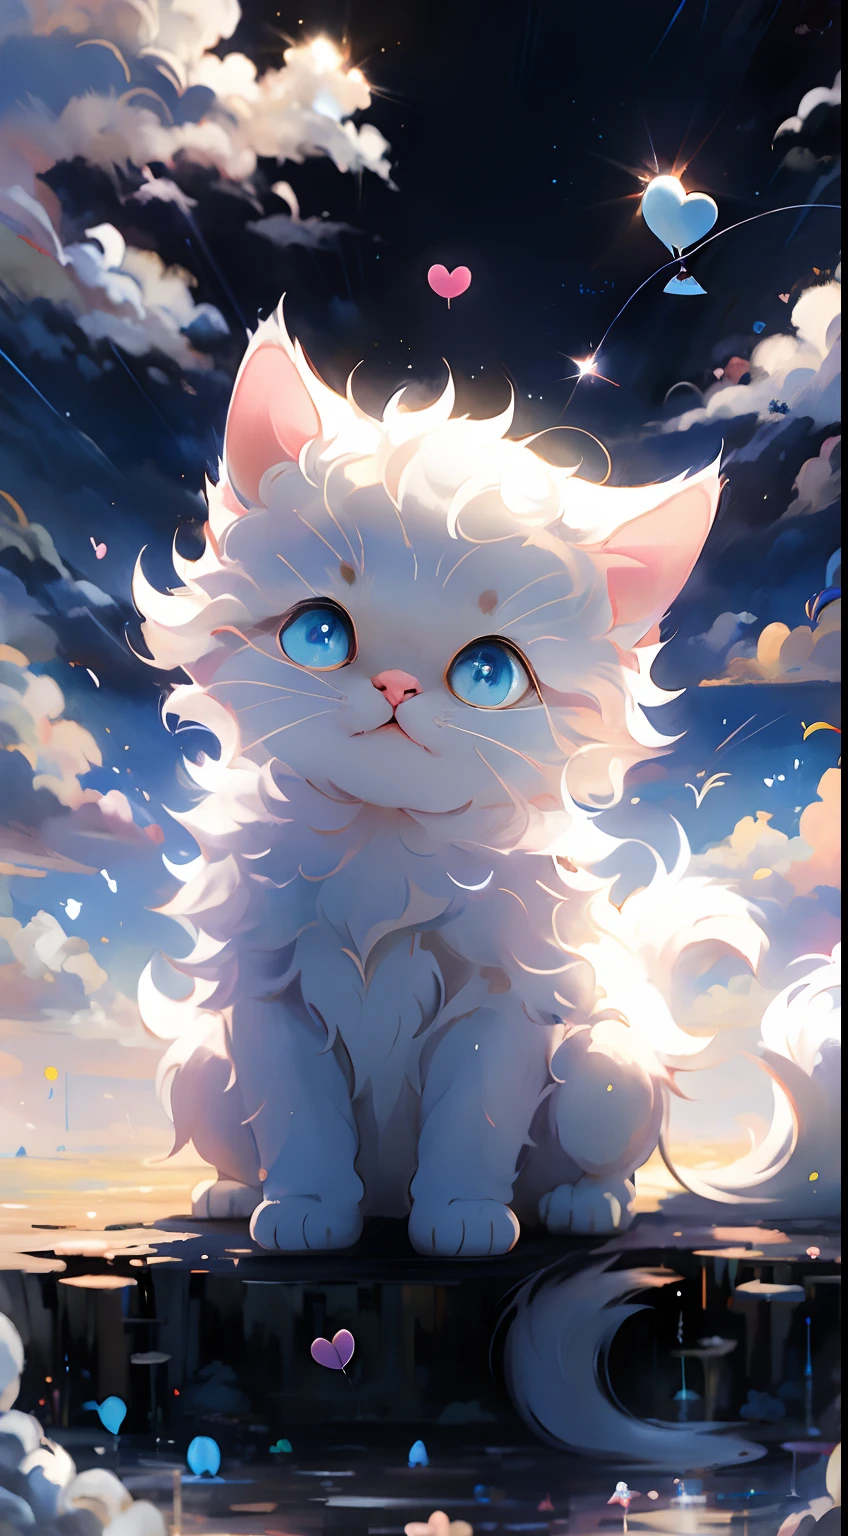 melhor qualidade, obra-prima, Uma detalhada:1.4, Um gatinho branco bonito, Segurando um balão de amor, O fundo é céu azul e nuvens brancas。